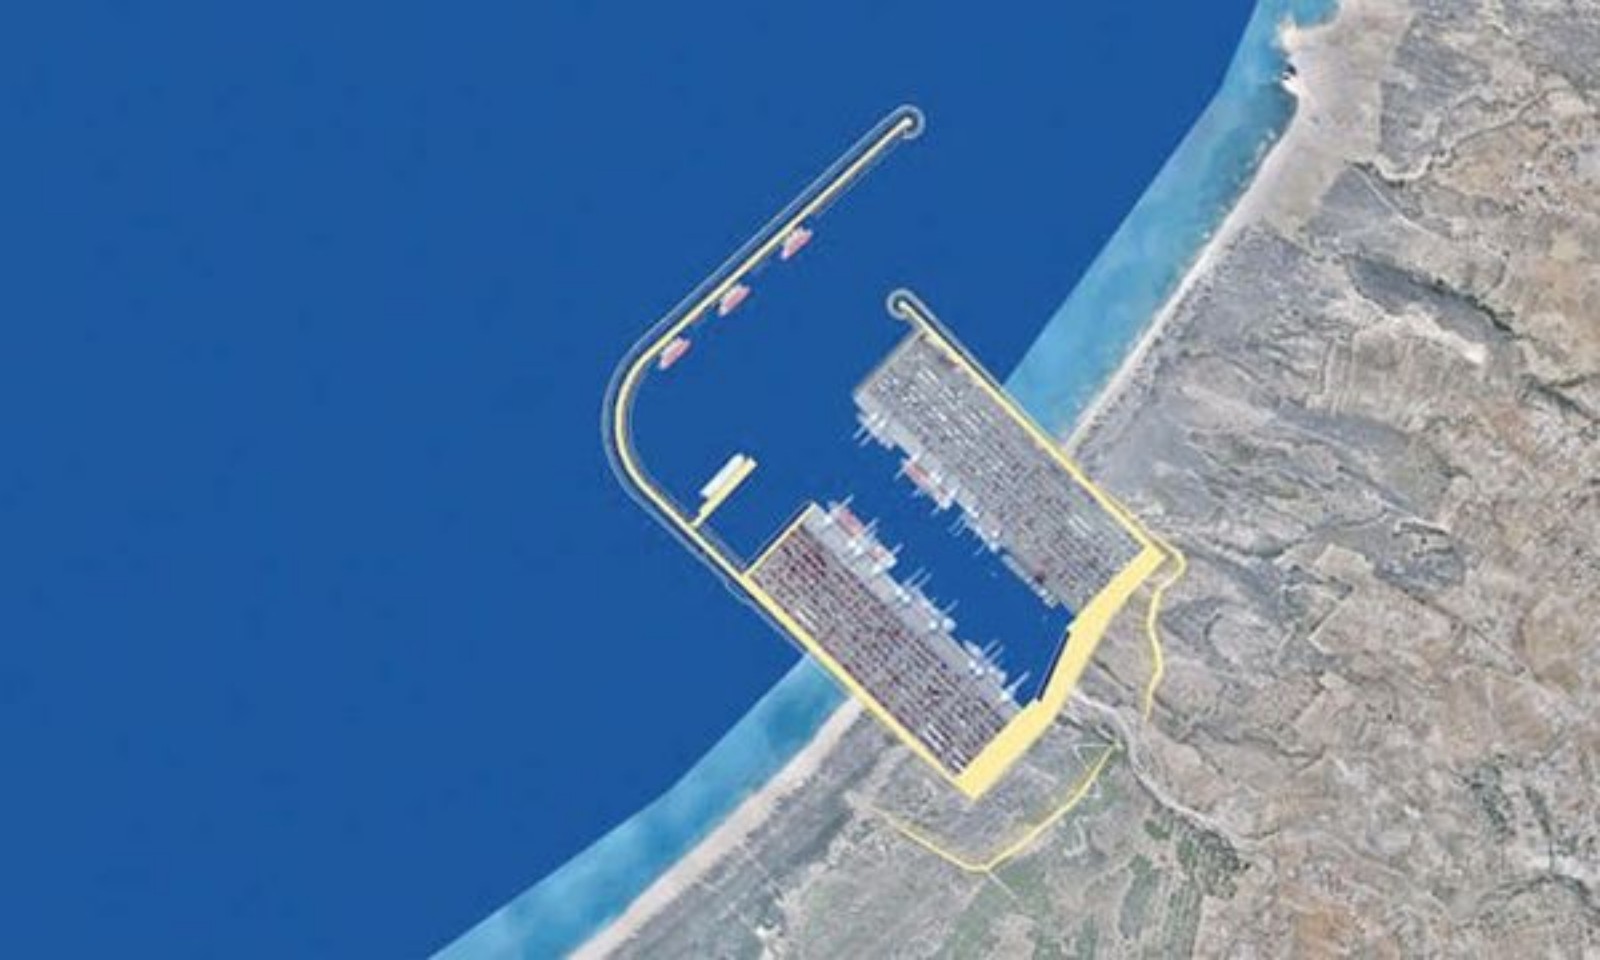 المغرب يعزز سيادته الطاقية بإحداث محطة استيراد الغاز بميناء الناظور وربطها بالأنبوب المغاربي الأوروبي